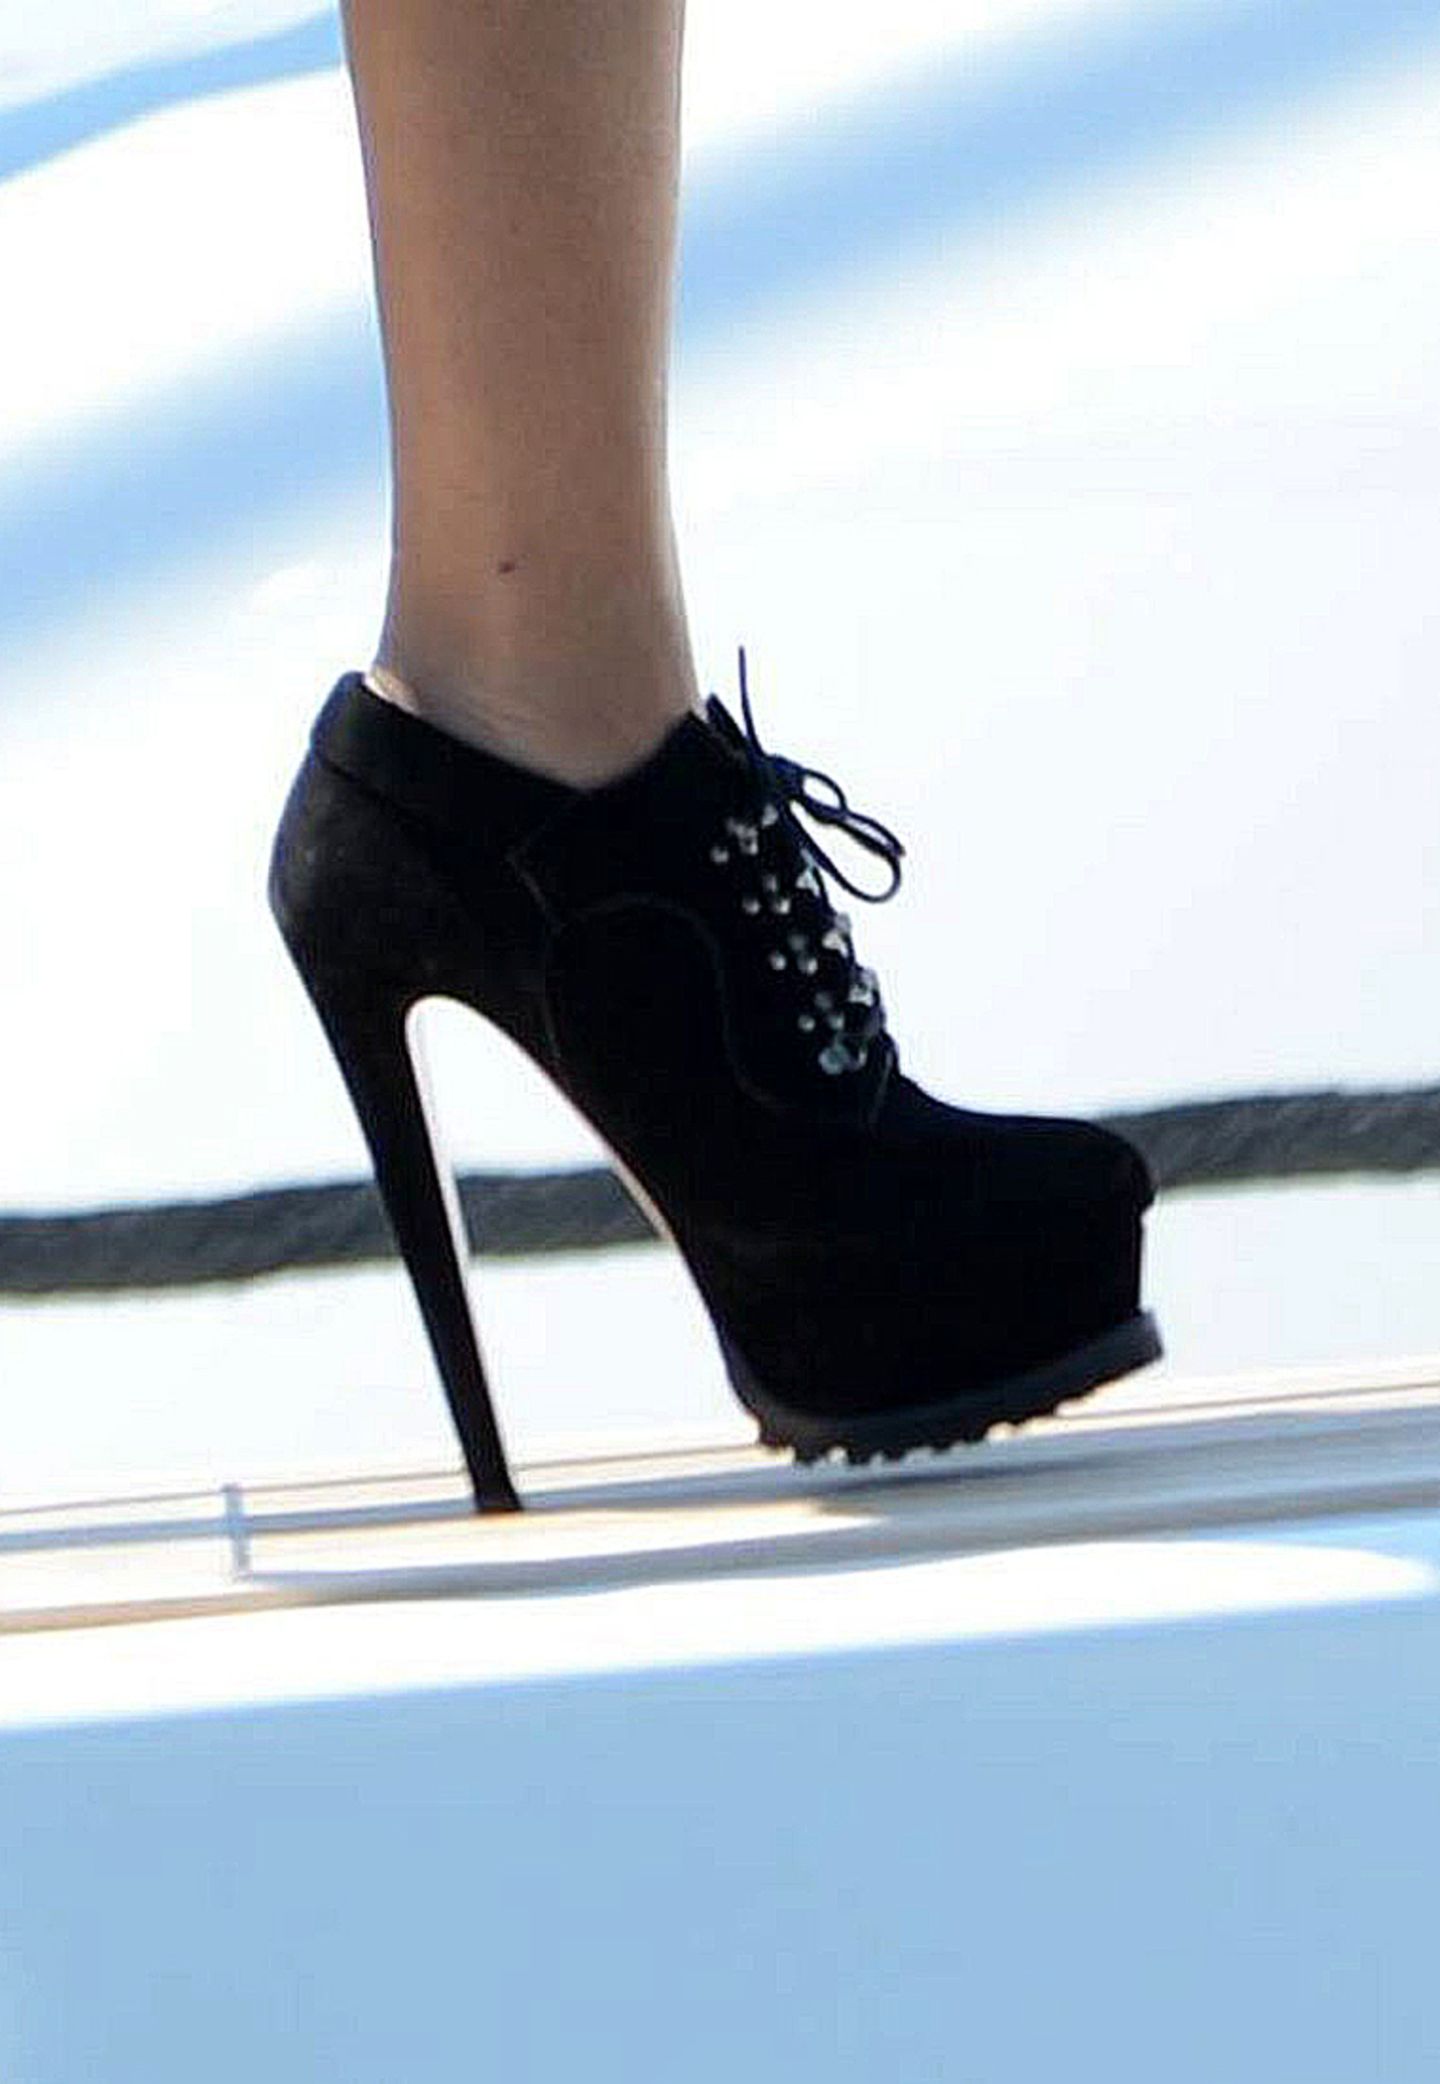 Gute 15 Zentimeter wächst Beyonce mit ihren Ankle-Boots. Ist zu hoffen, dass die geriffelte Sohle ihr genug Standfestigkeit gibt.